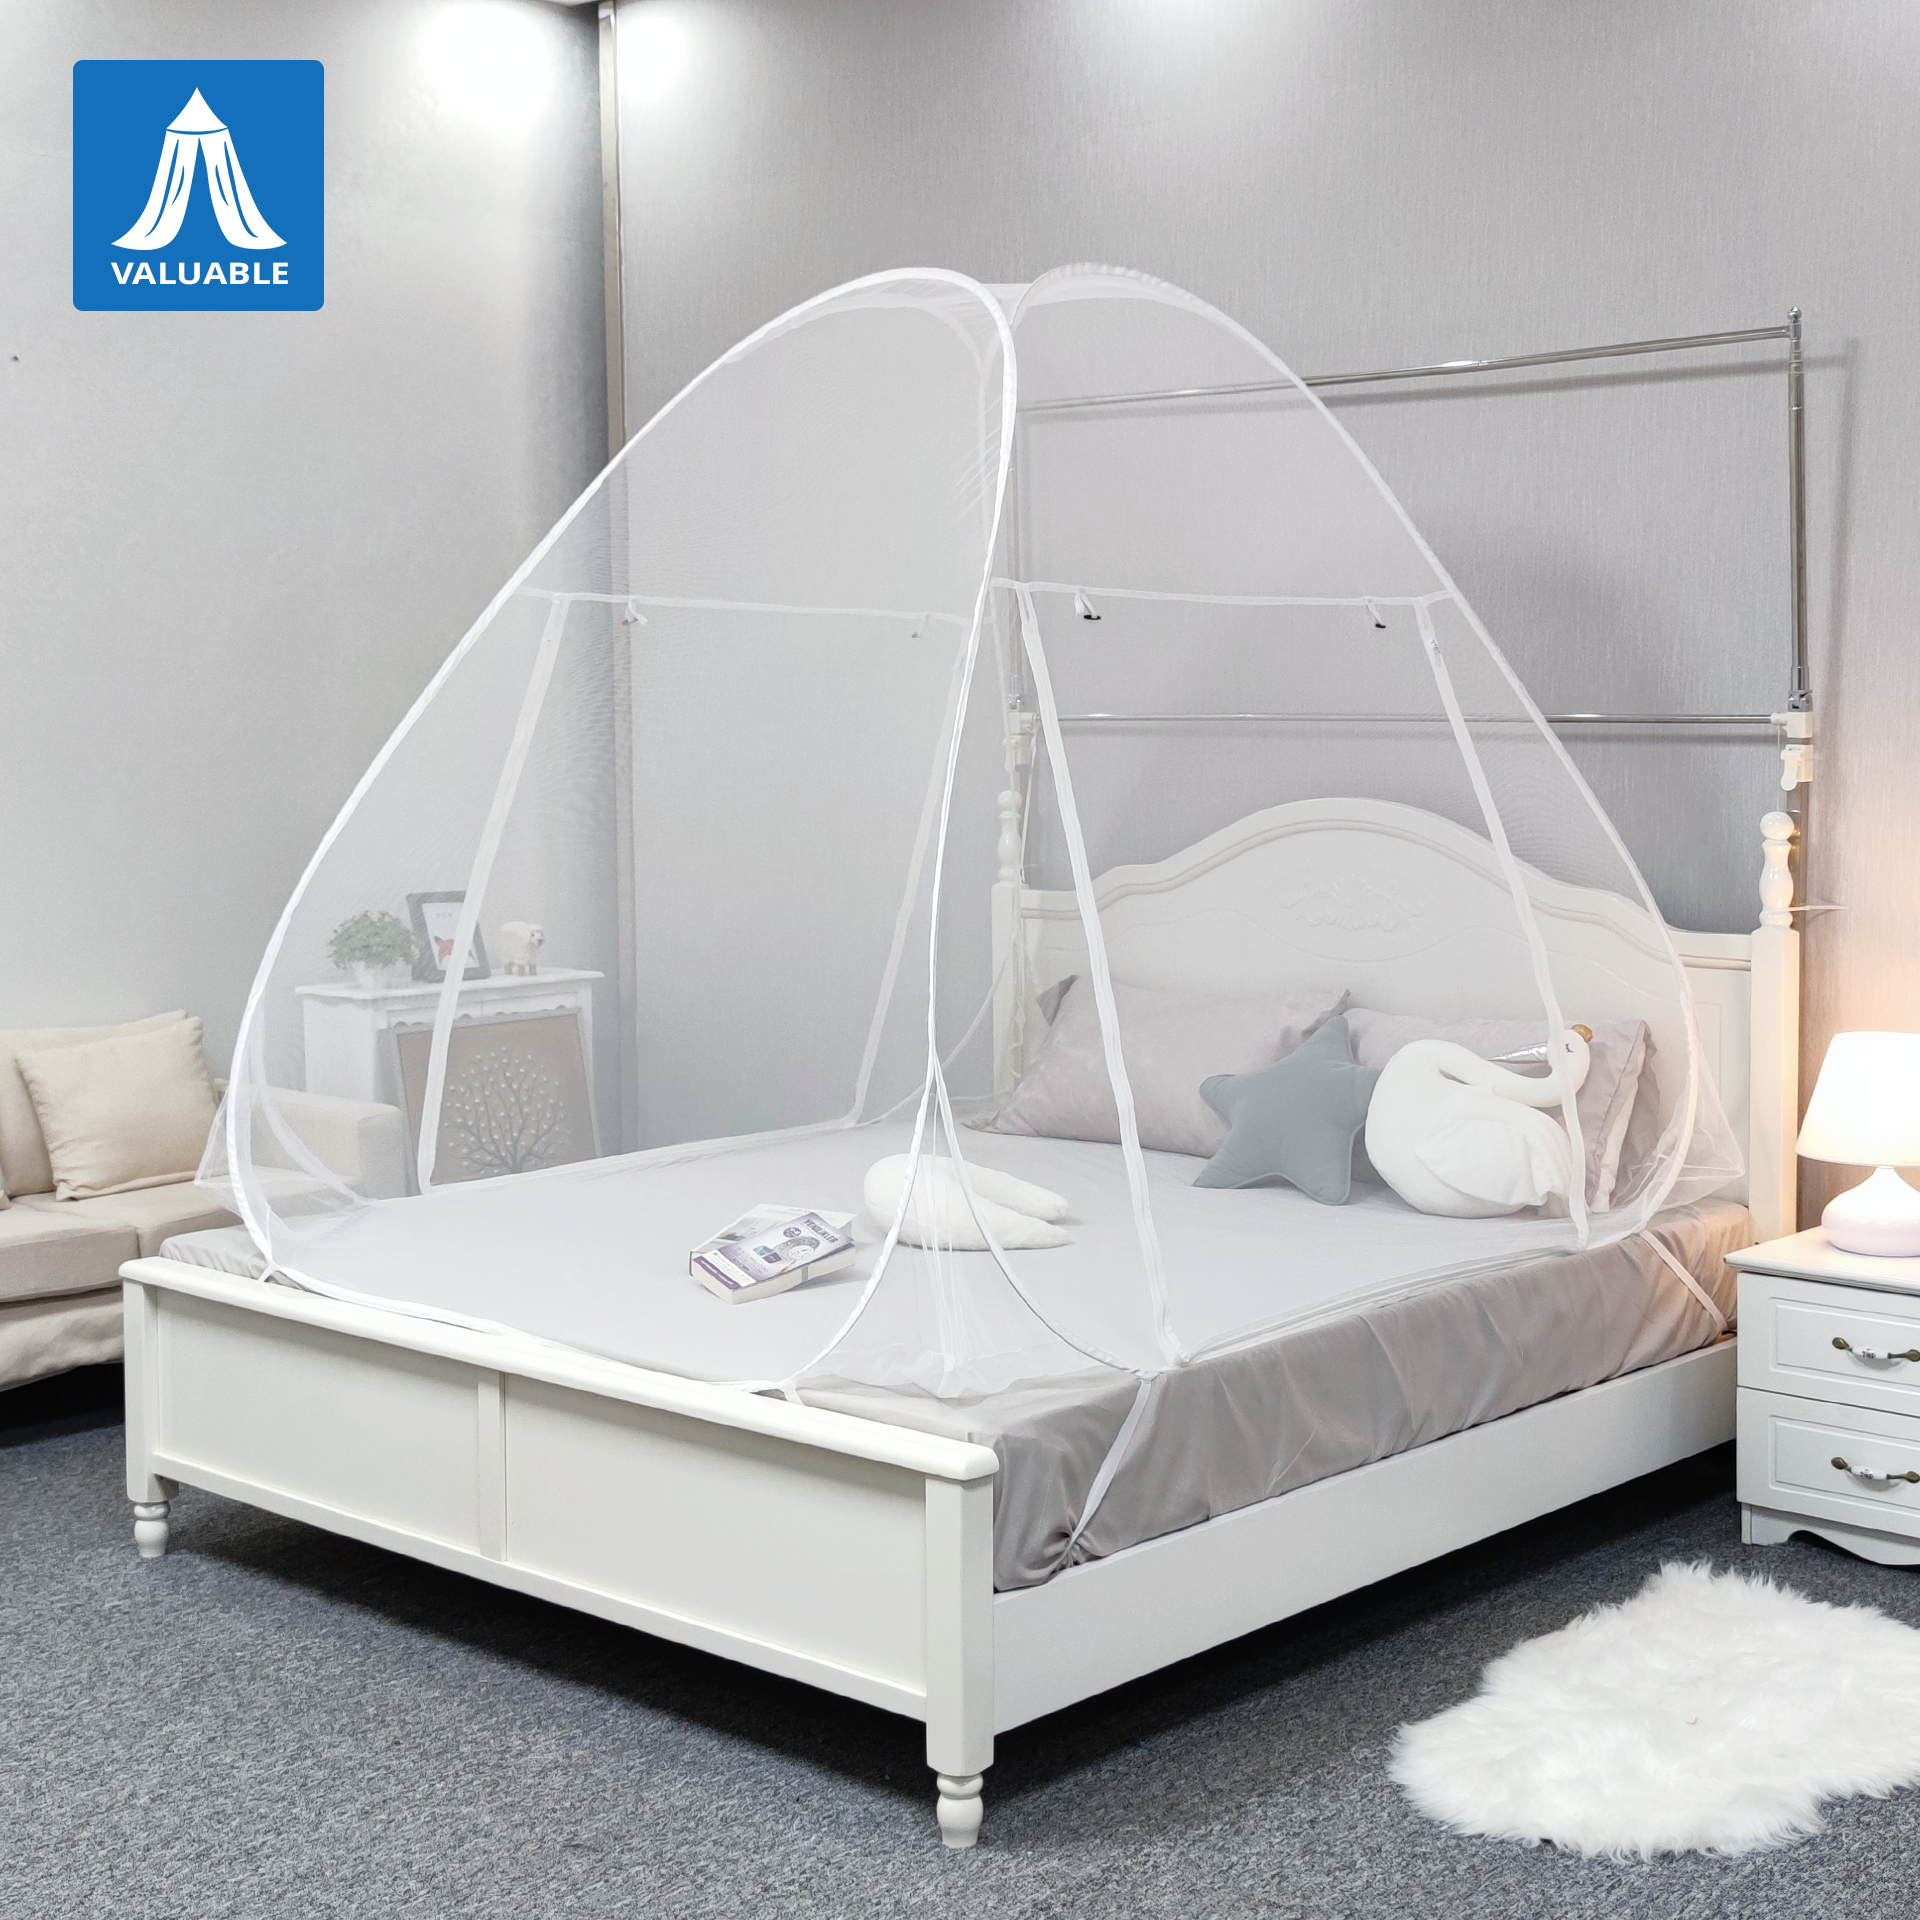 Tienda portátil de la cama de la red de mosquito de las redes de mosquito anti con las redes de mosquito plegables inferiores